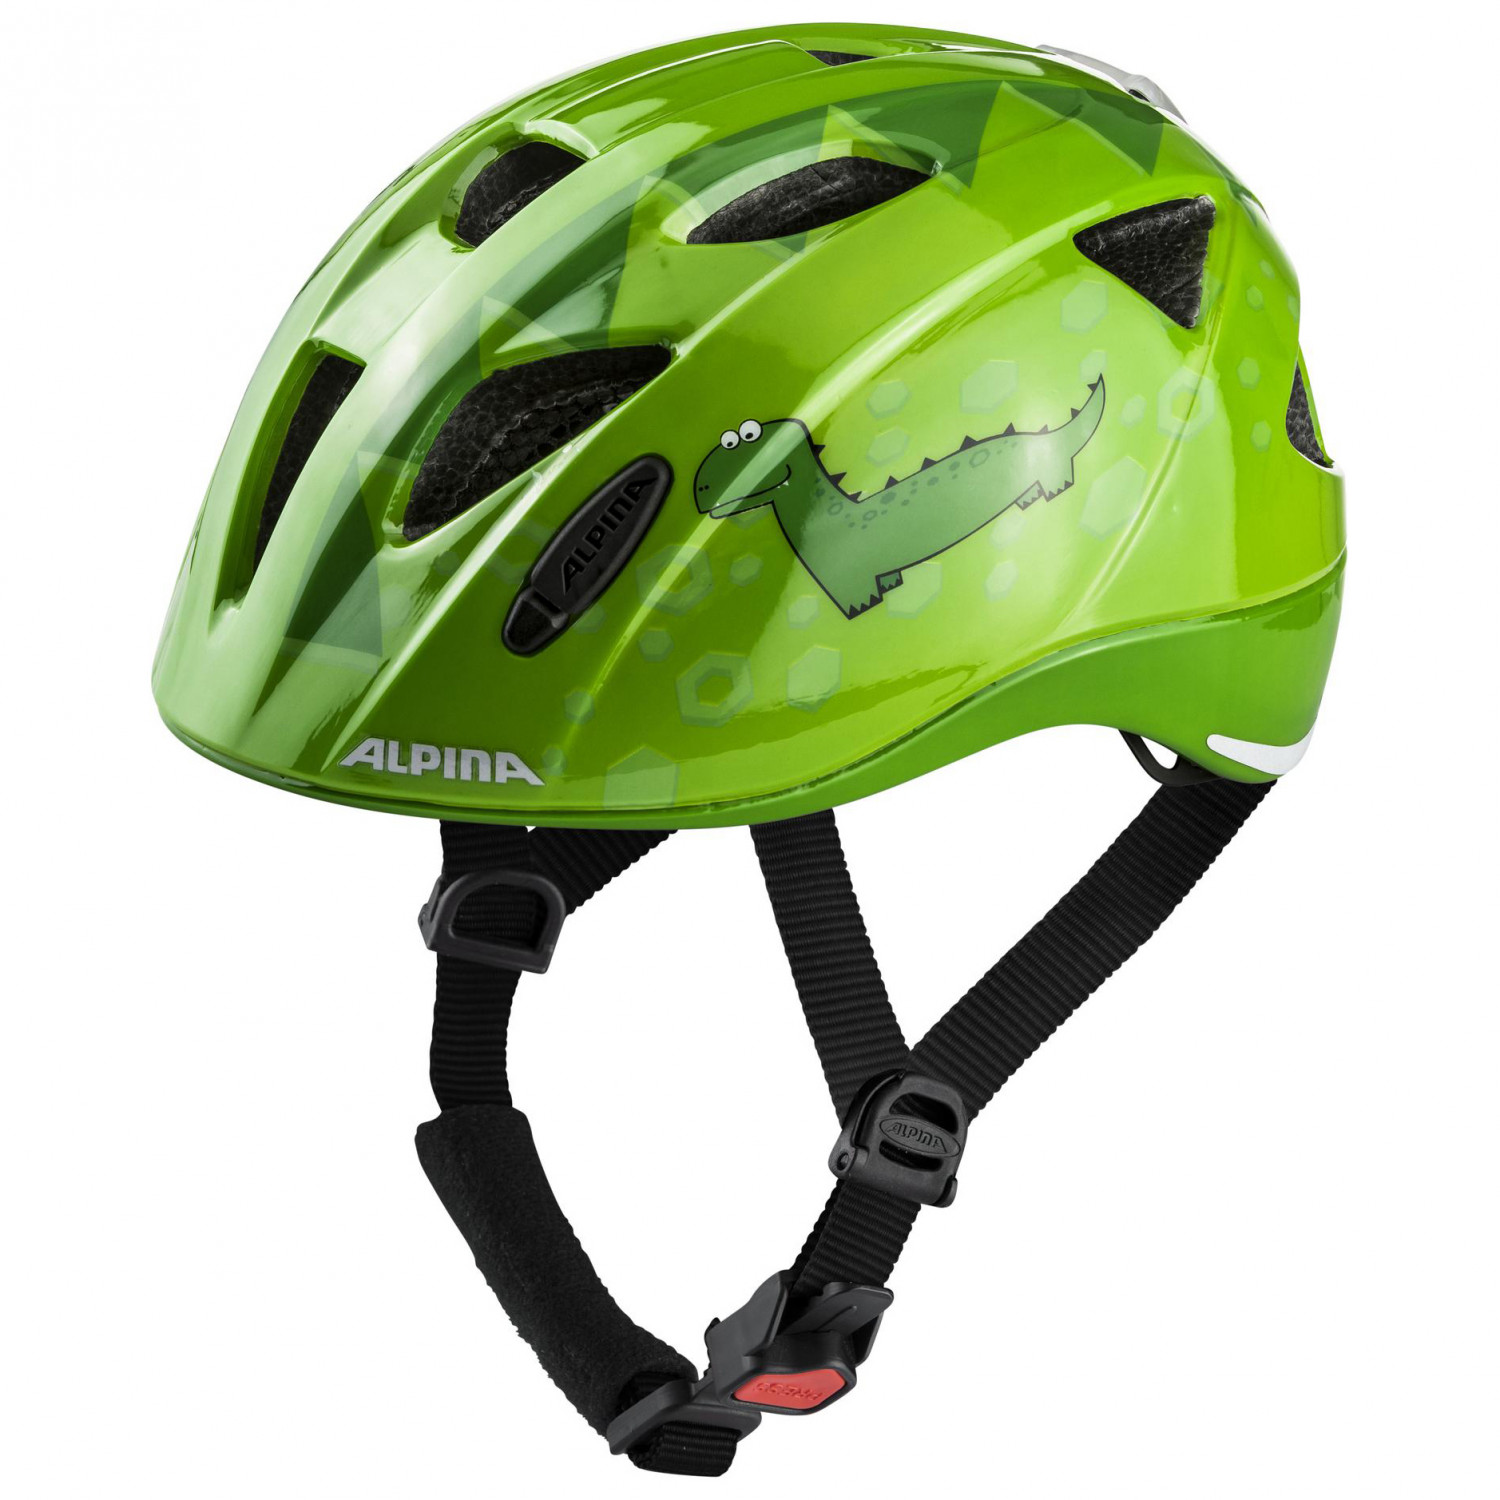 alpina шлем защитный alpina ximo flash green dino gloss цвет зеленый ростовка 47 51см Велосипедный шлем Alpina Kid's Alpina Ximo Flash, цвет Green Dino